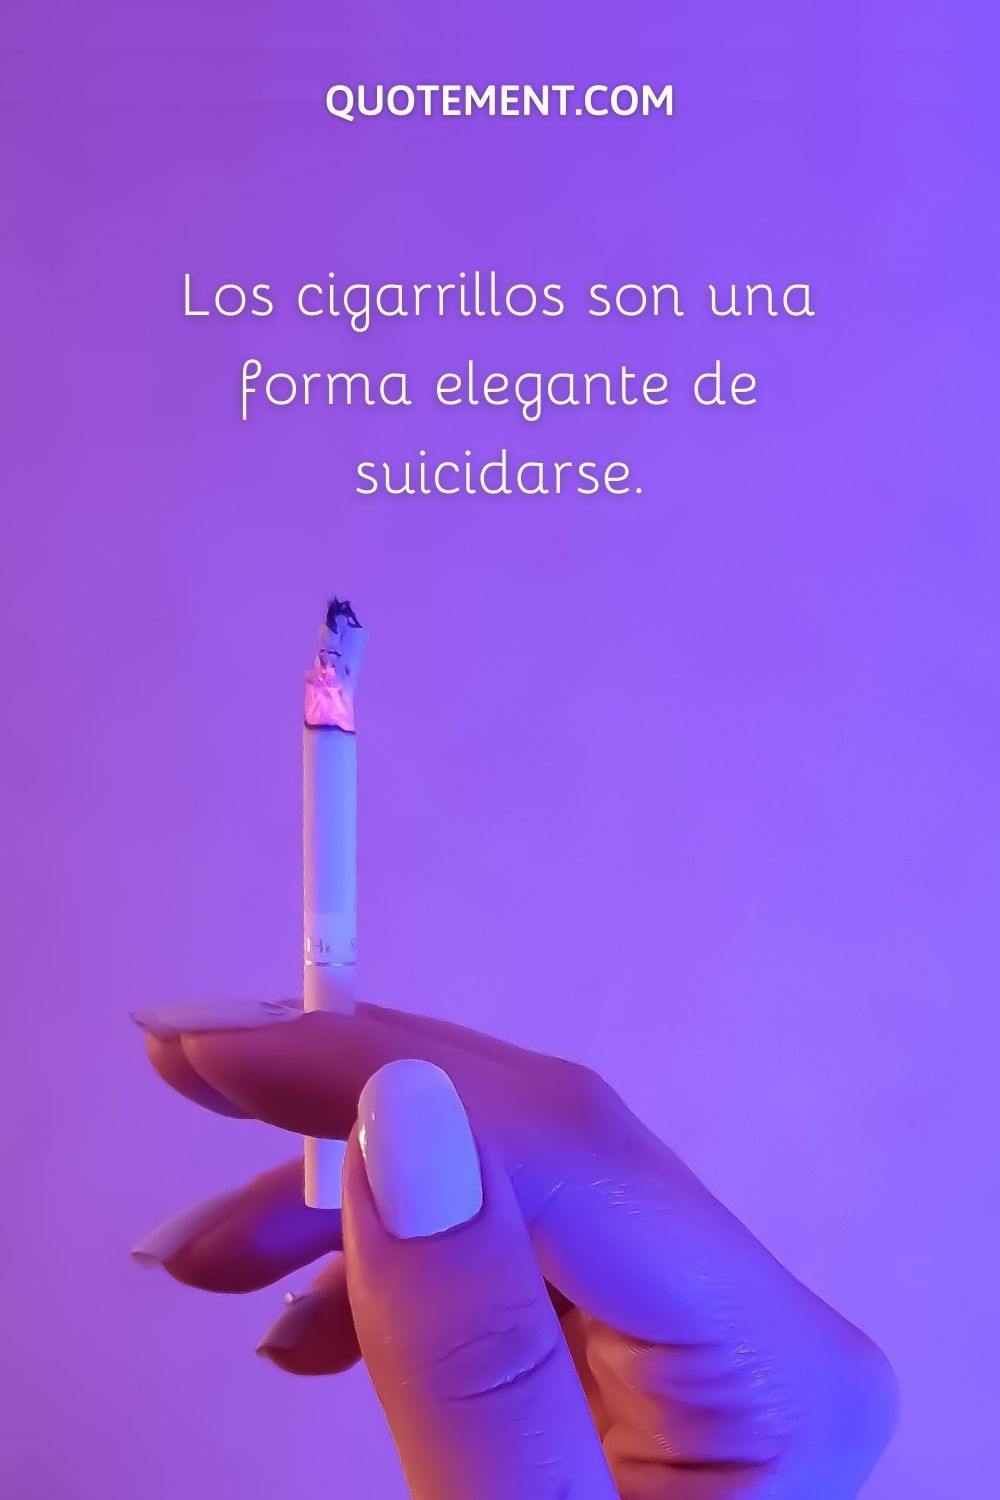 Los cigarrillos son una forma elegante de suicidarse